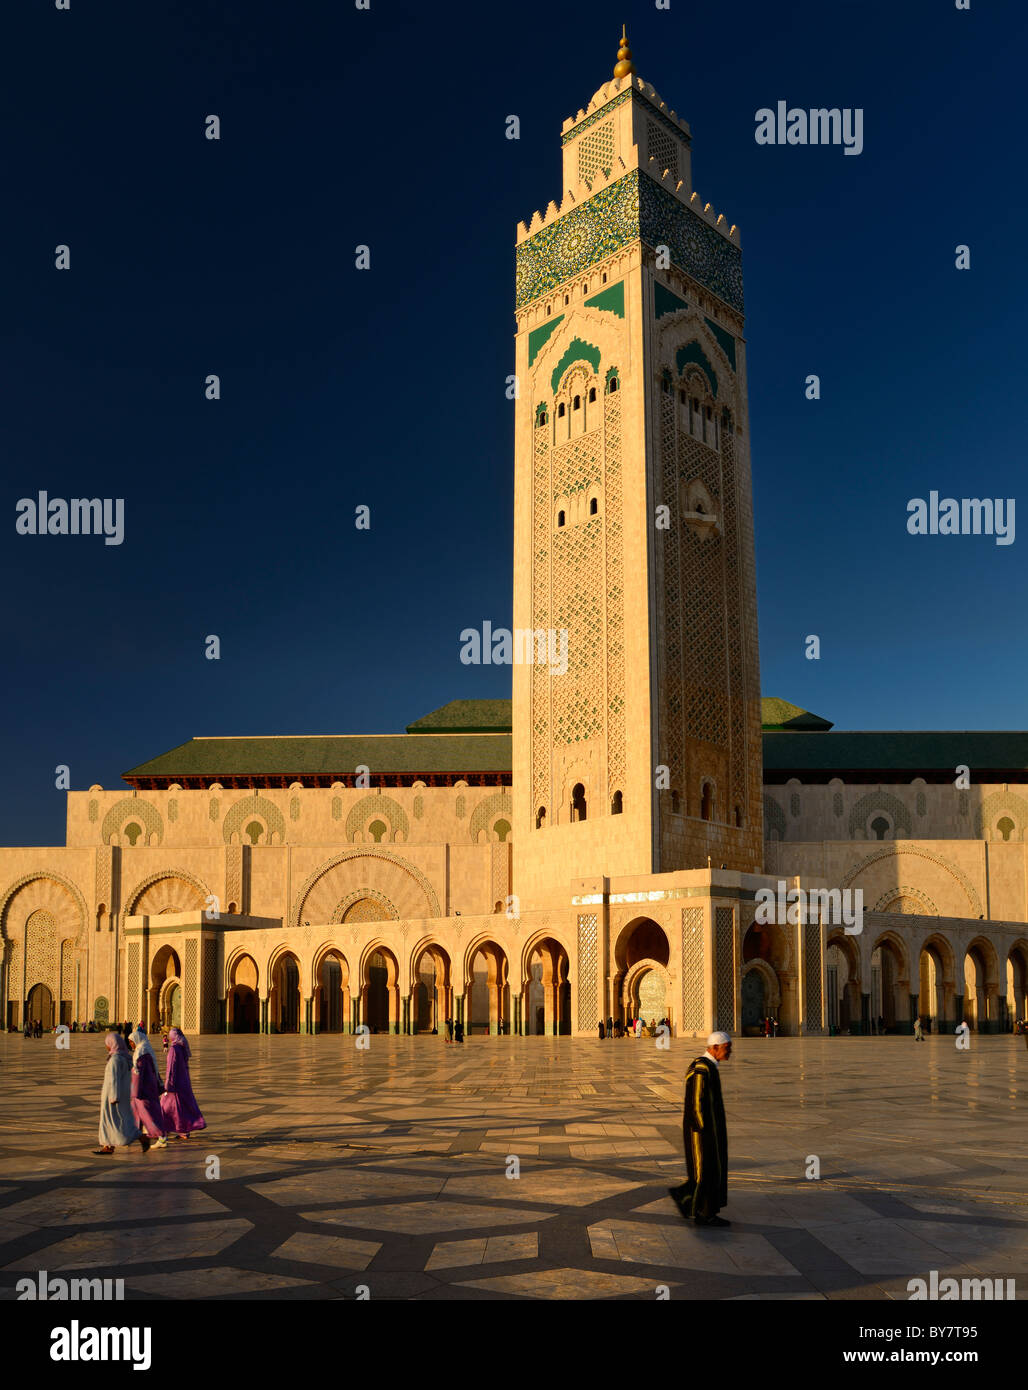 Uomo marocchino e le donne a piedi sulla piazza della moschea di Hassan II Casablanca al tramonto con il minareto di architettura moresca di Casablanca in Marocco Foto Stock